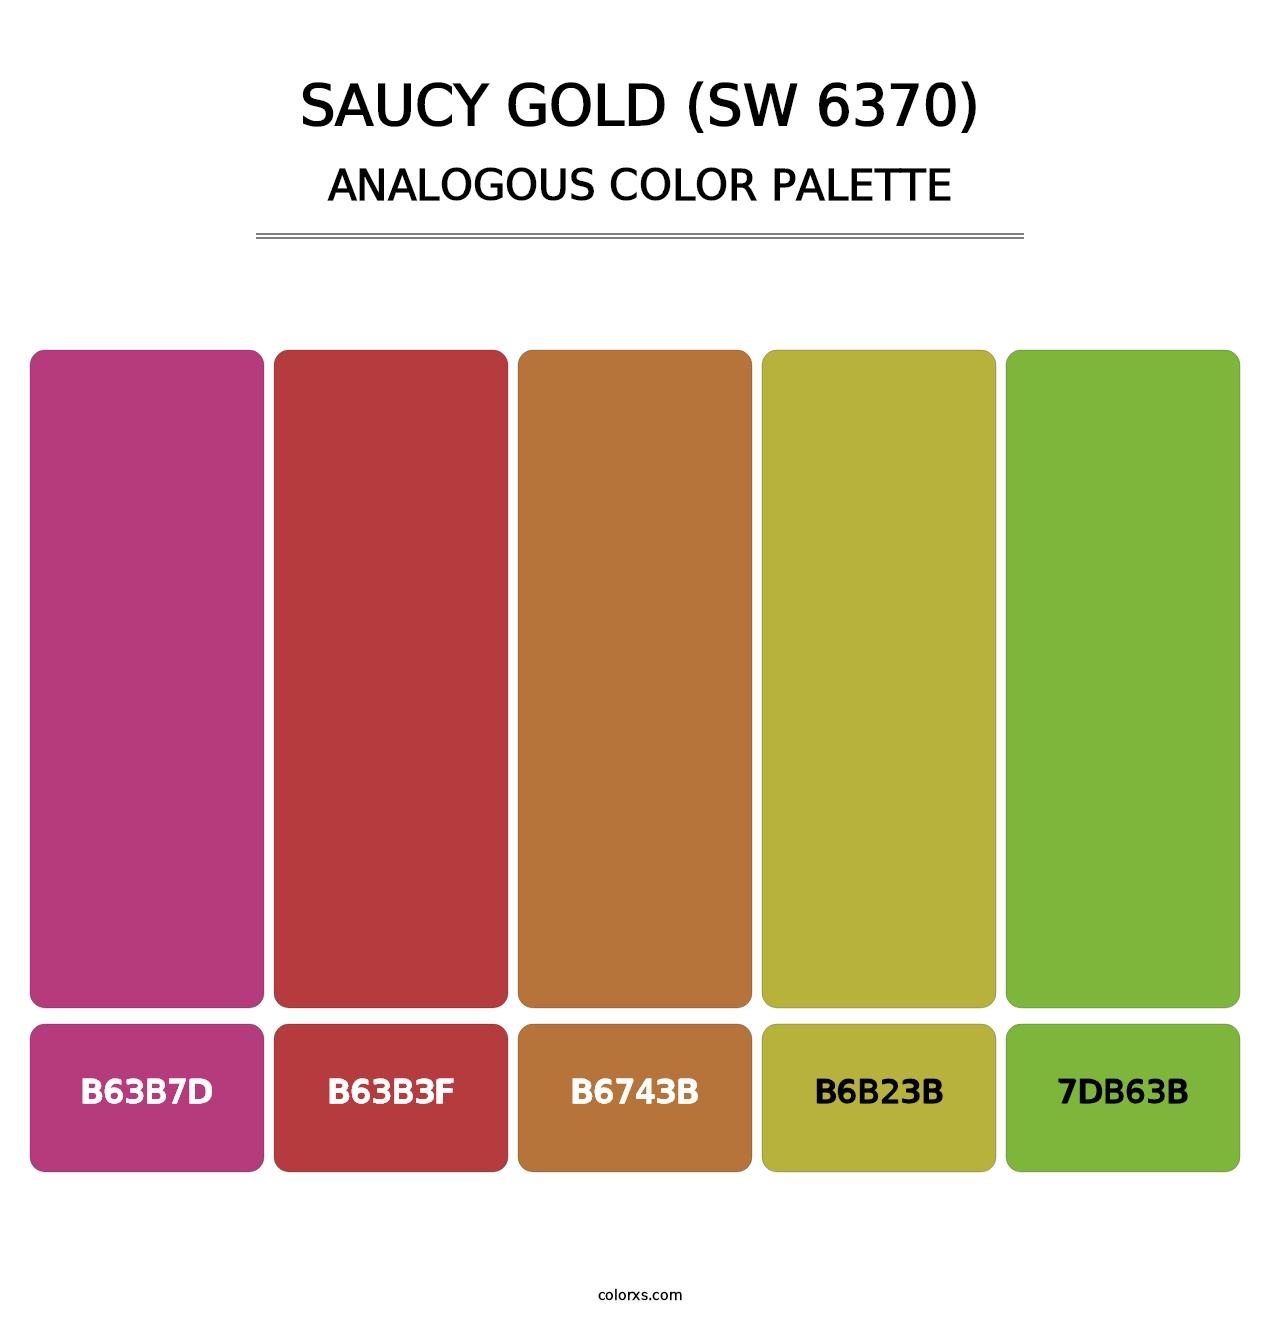 Saucy Gold (SW 6370) - Analogous Color Palette